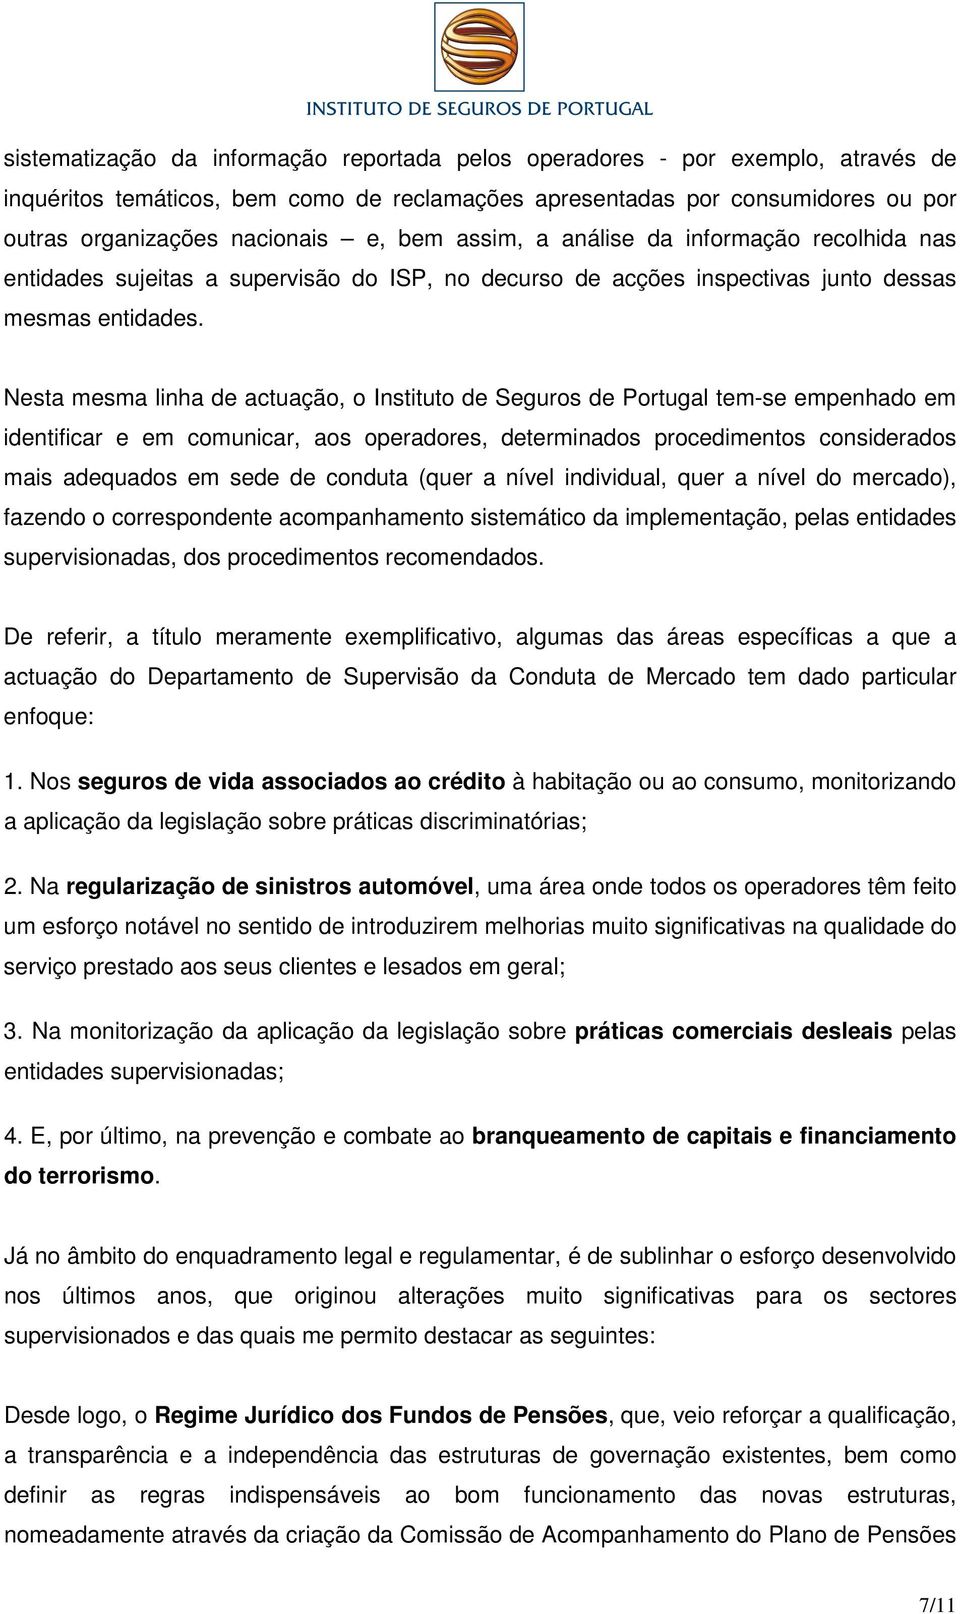 Nesta mesma linha de actuação, o Instituto de Seguros de Portugal tem-se empenhado em identificar e em comunicar, aos operadores, determinados procedimentos considerados mais adequados em sede de